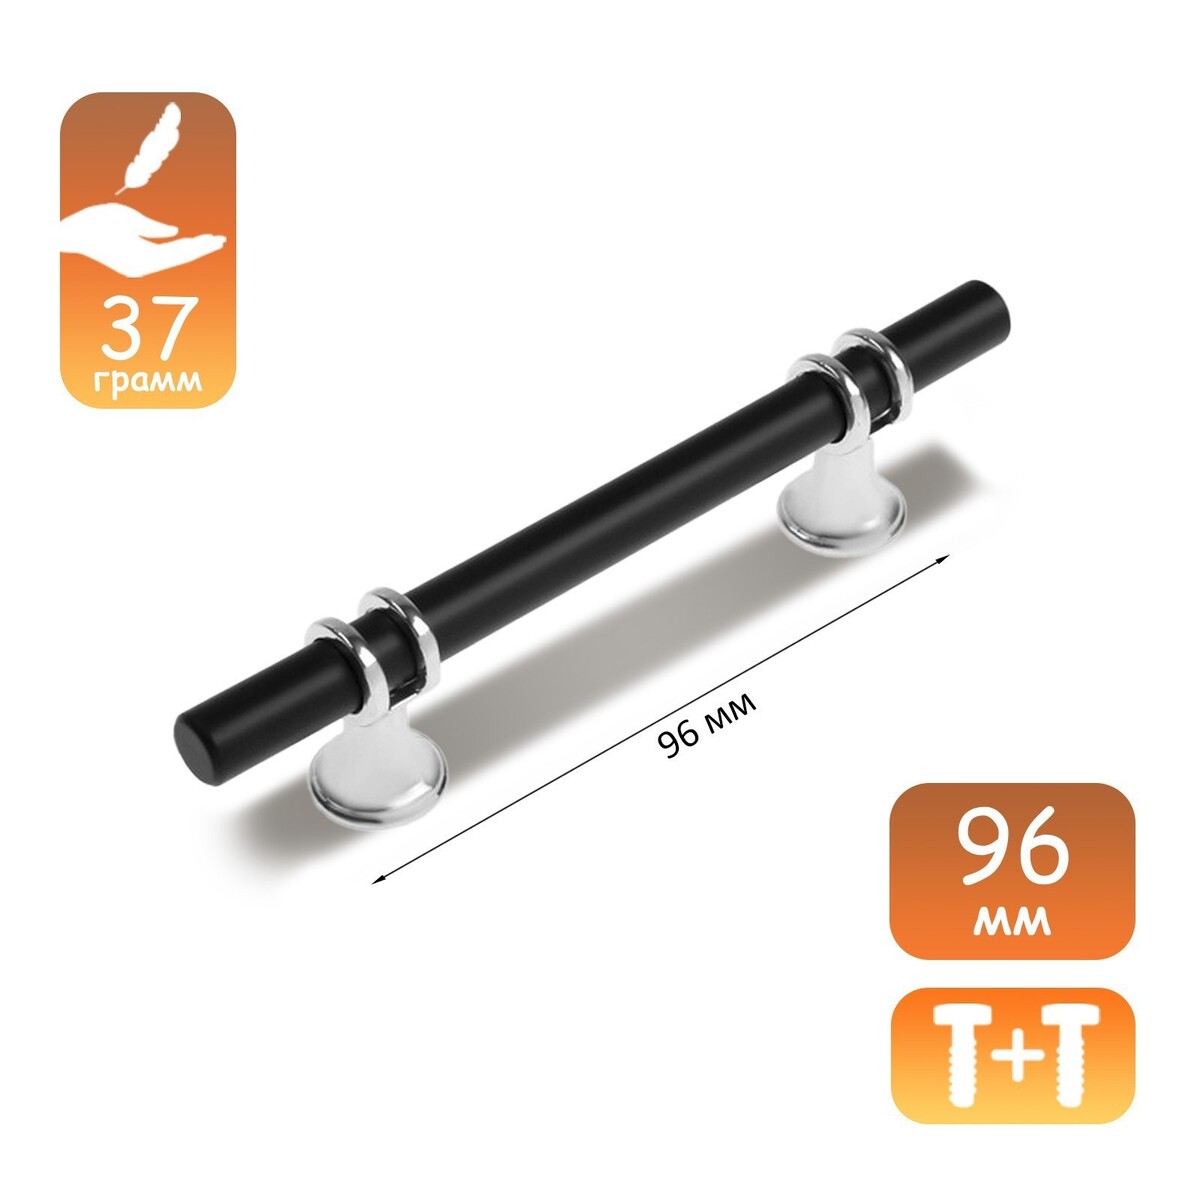 Ручка скоба cappio, м/о 96 мм, d=12 mm, пластик, цвет хром/черный ручка скоба мод 1012 128 м о 128 мм хром точка